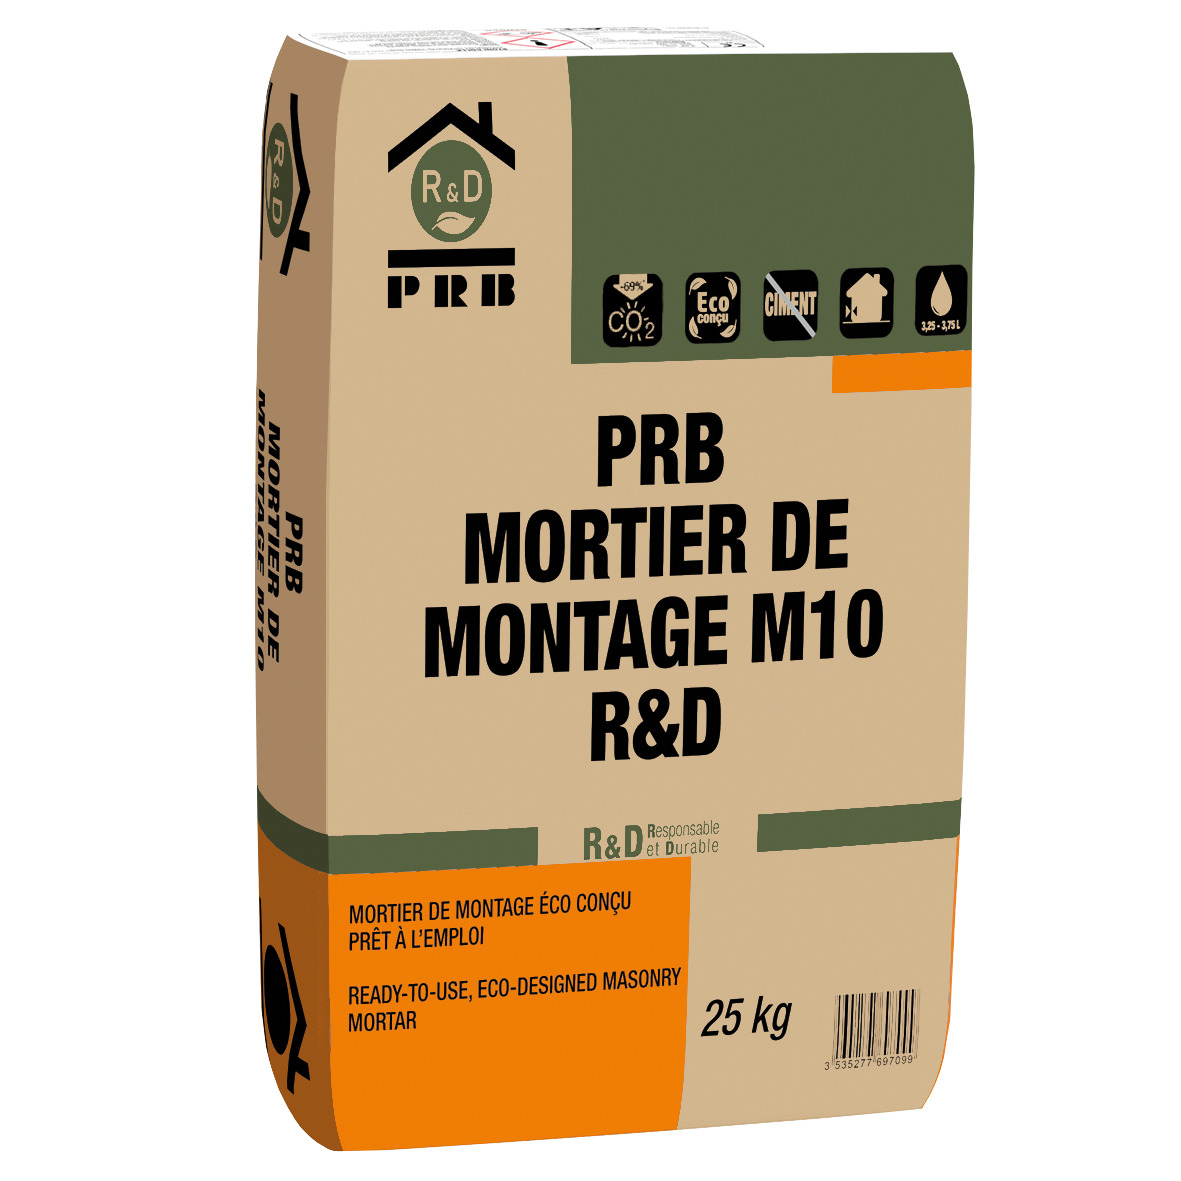 prb-mortier-montage-m10-r-d-25kg-56-pal-prb-0